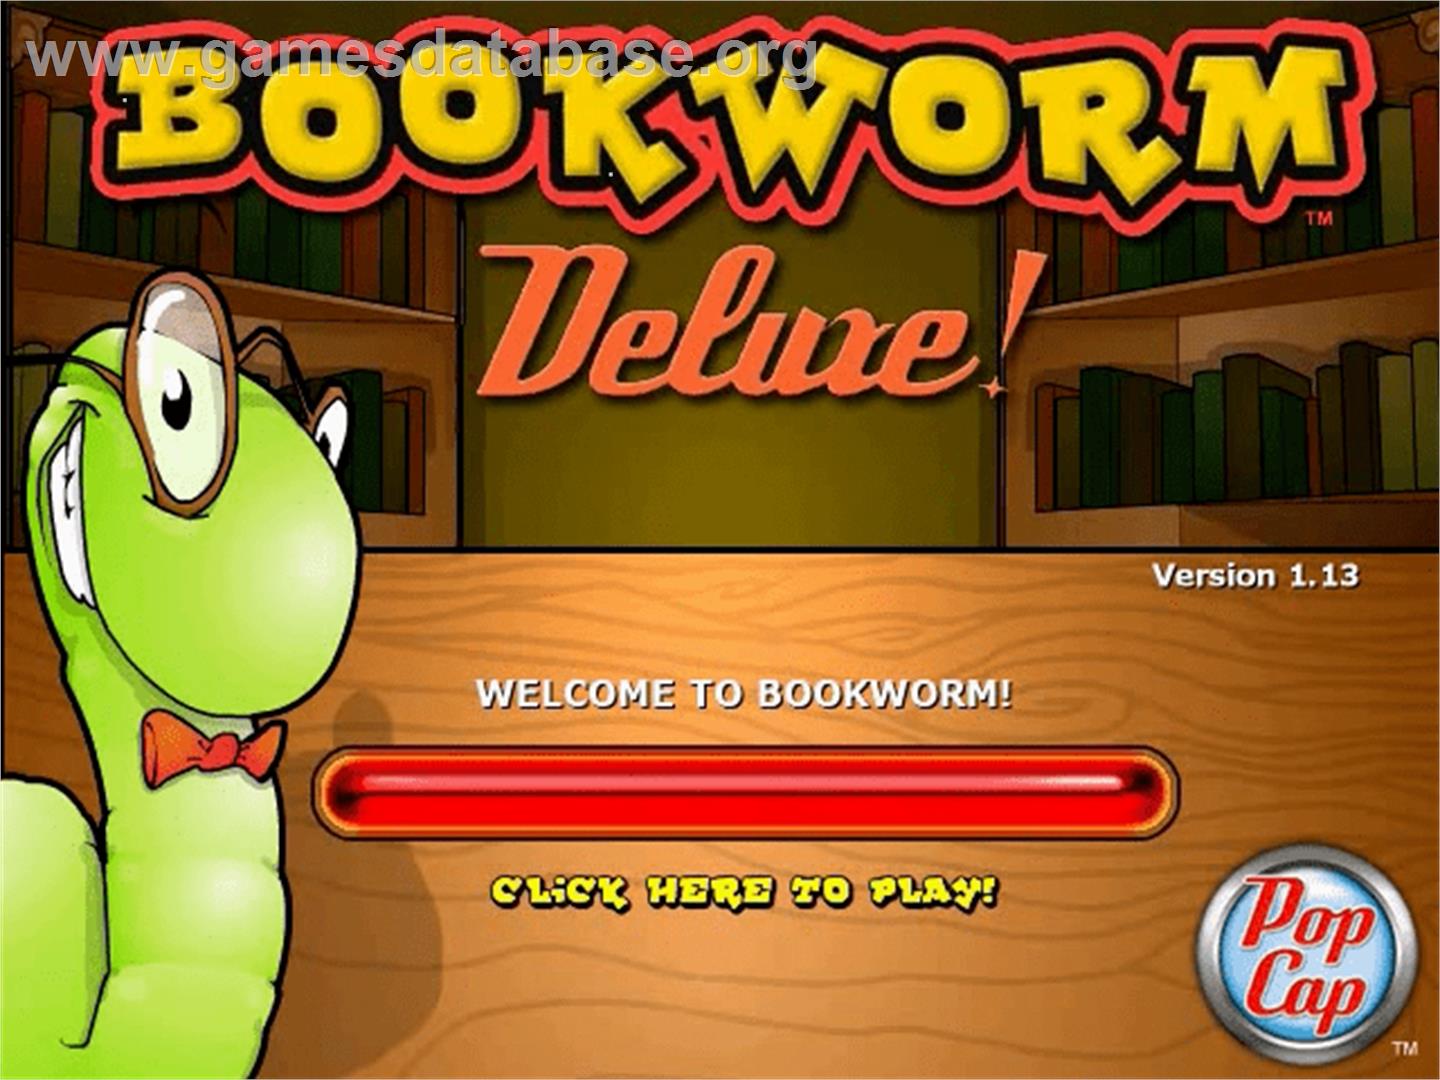 Bookworm Deluxe - PopCap - Artwork - Title Screen